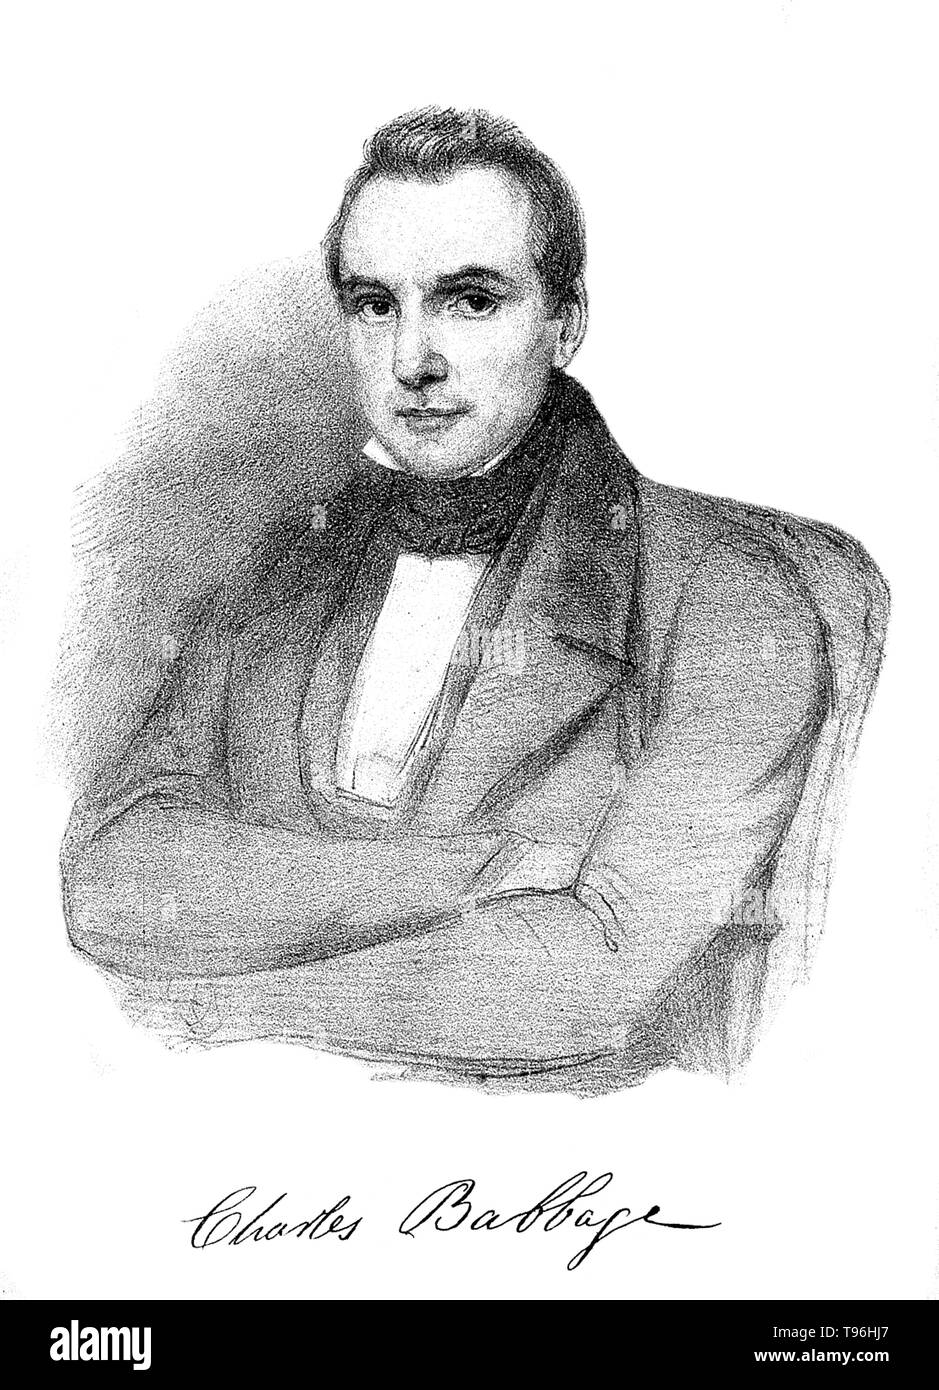 Charles Babbage (Décembre 26, 1791 - Octobre 18, 1871) était un mathématicien anglais. Mathématicien, philosophe, inventeur et ingénieur en mécanique, il est surtout connu pour l'origine du concept d'un ordinateur programmable numérique. Banque D'Images